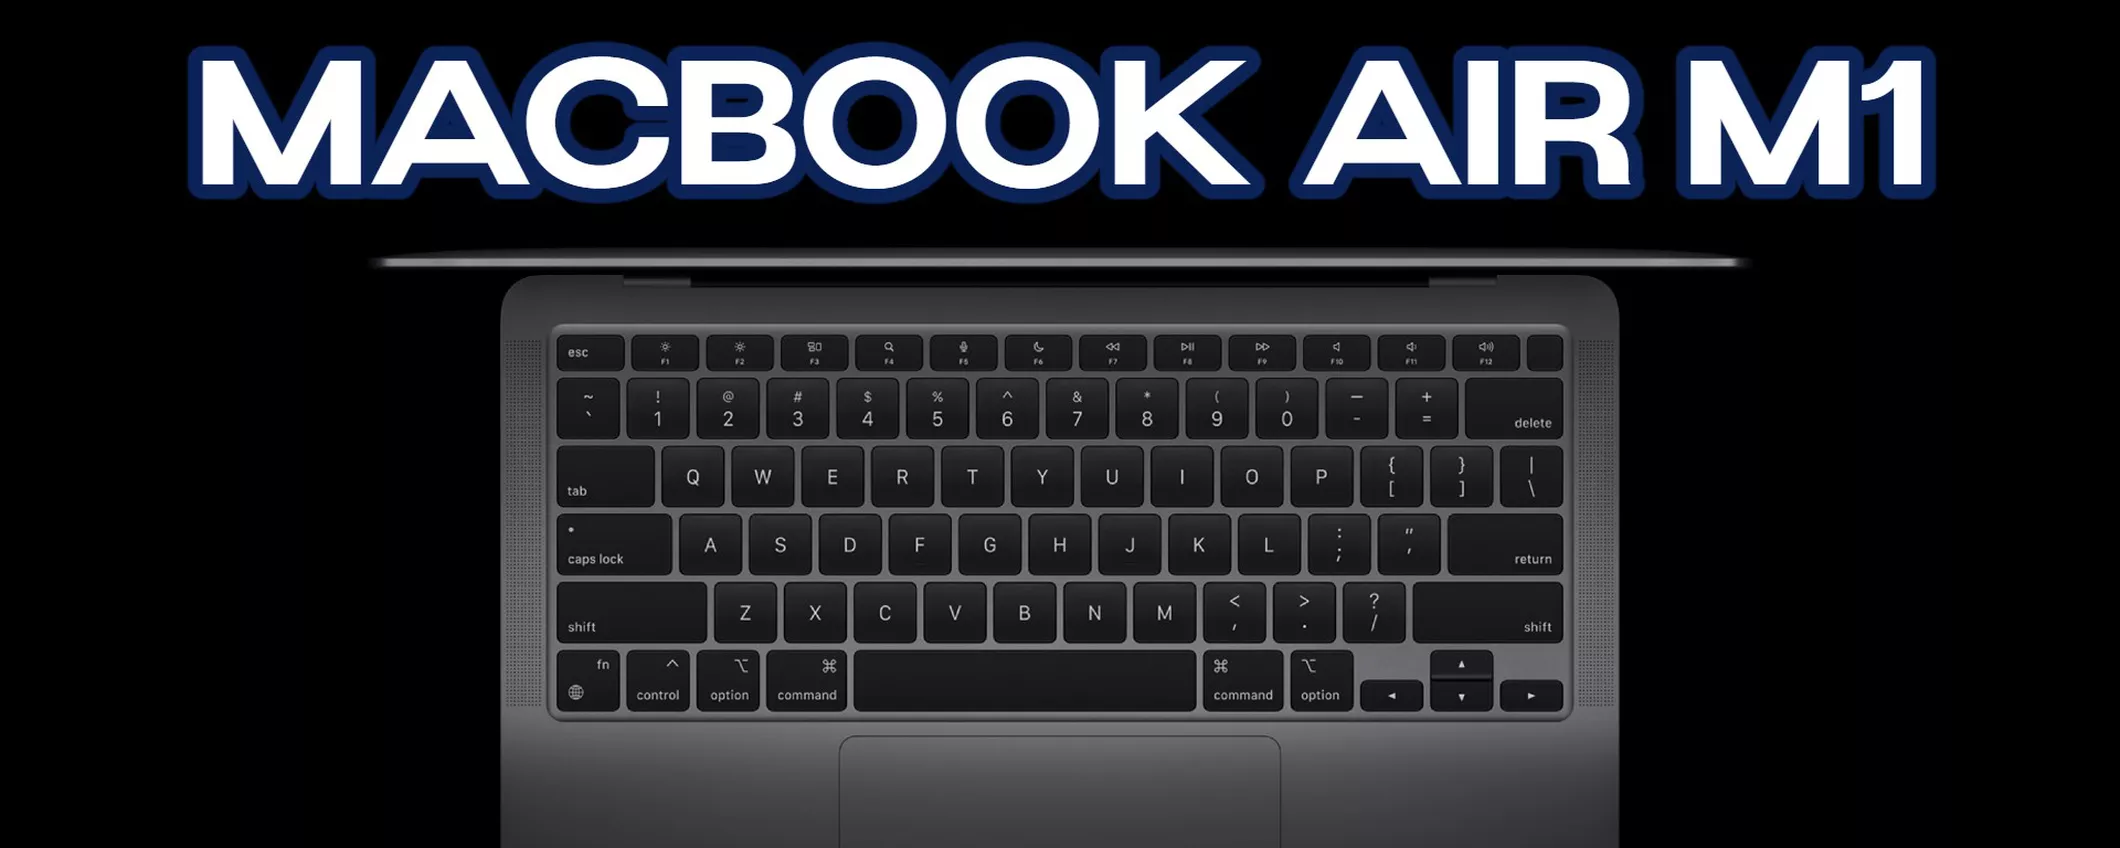 MacBook Air M1: SCONTO IMMEDIATO 320€ anche a rate